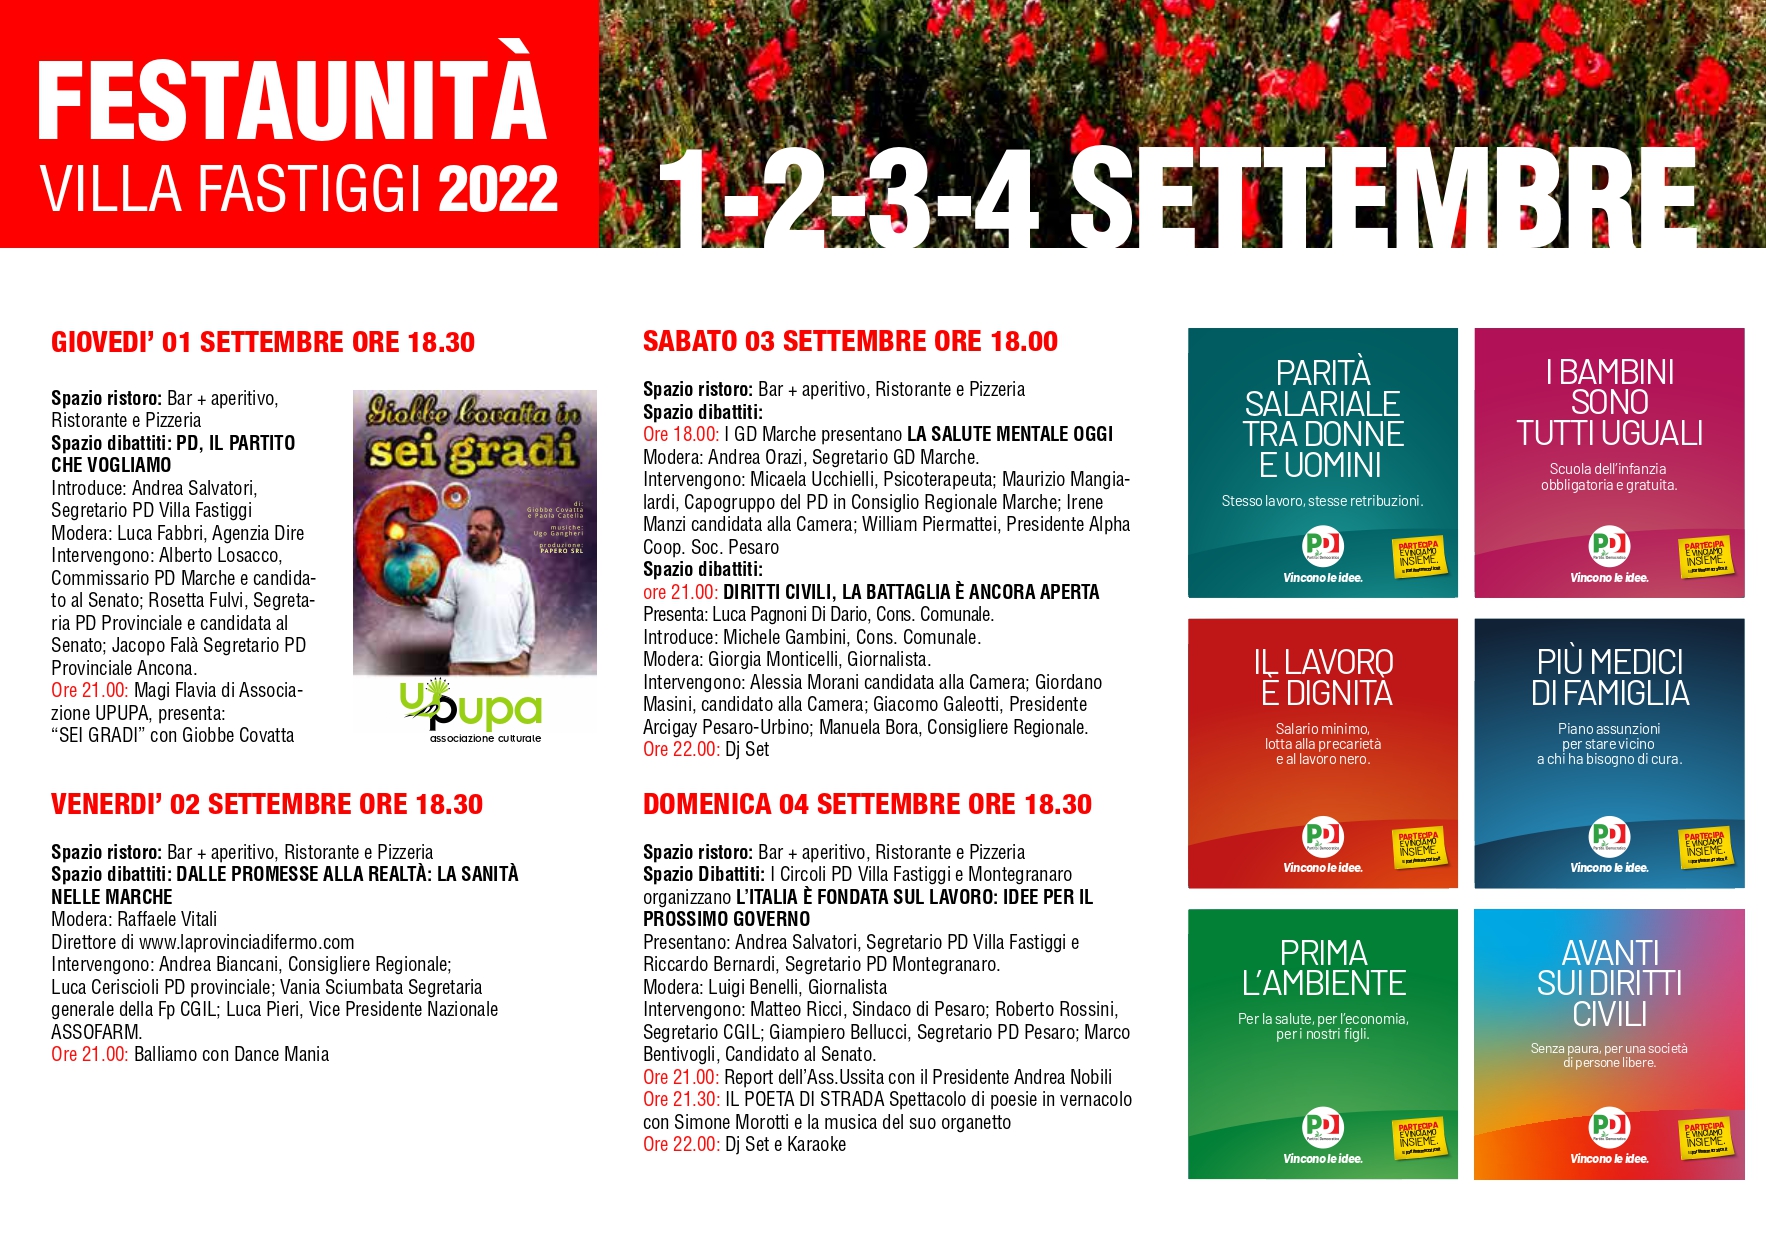 Festa Unità 2022 a Villa Fastiggi